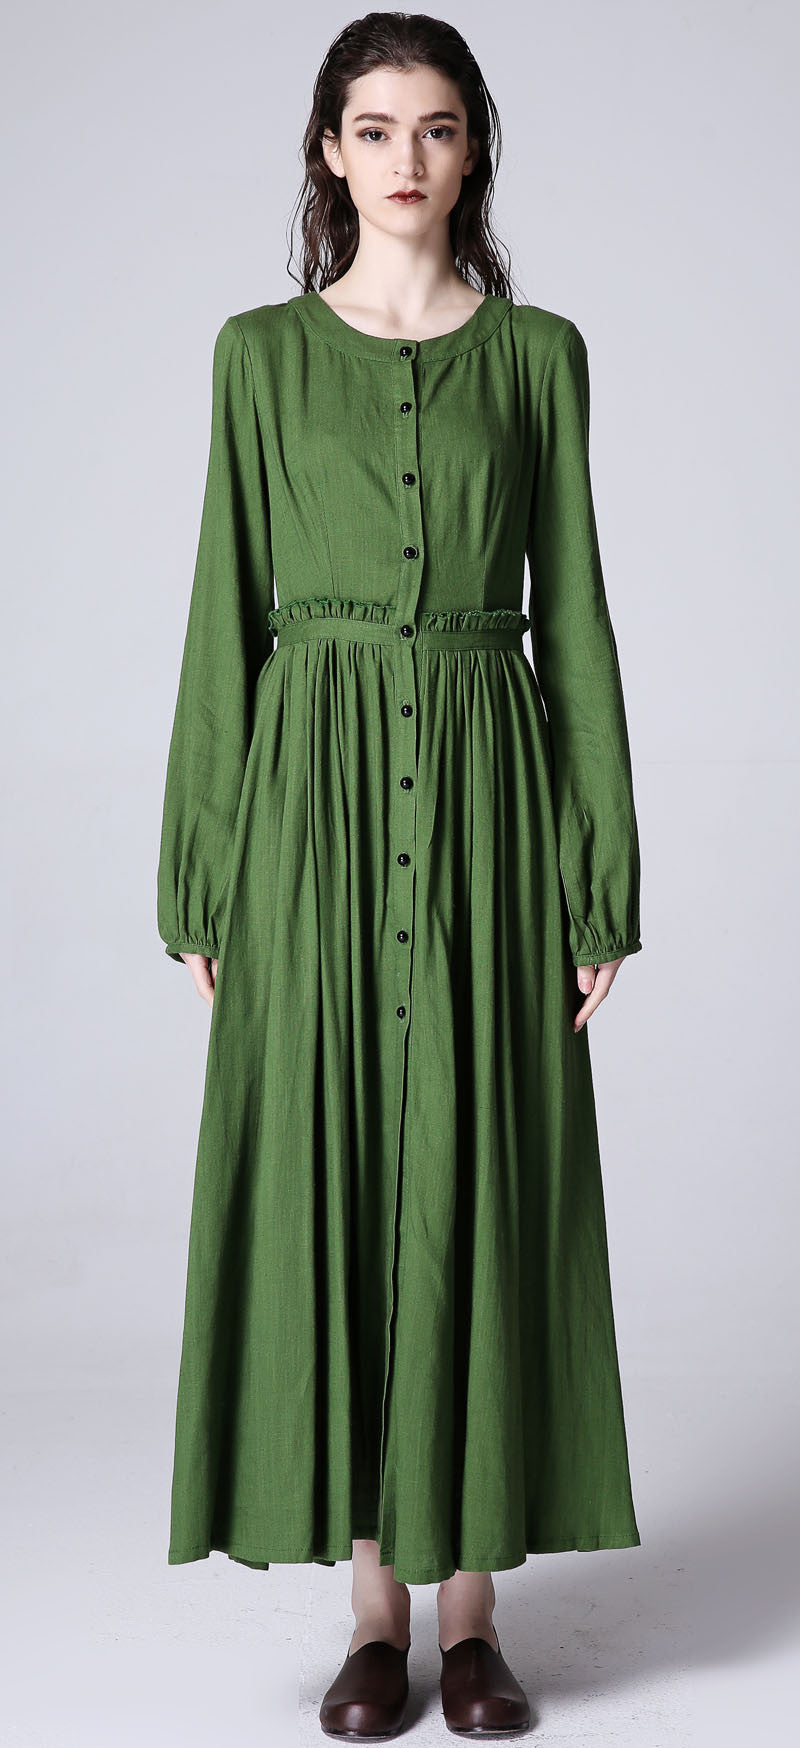 Green dress women linen dress custom made long dress (1185)